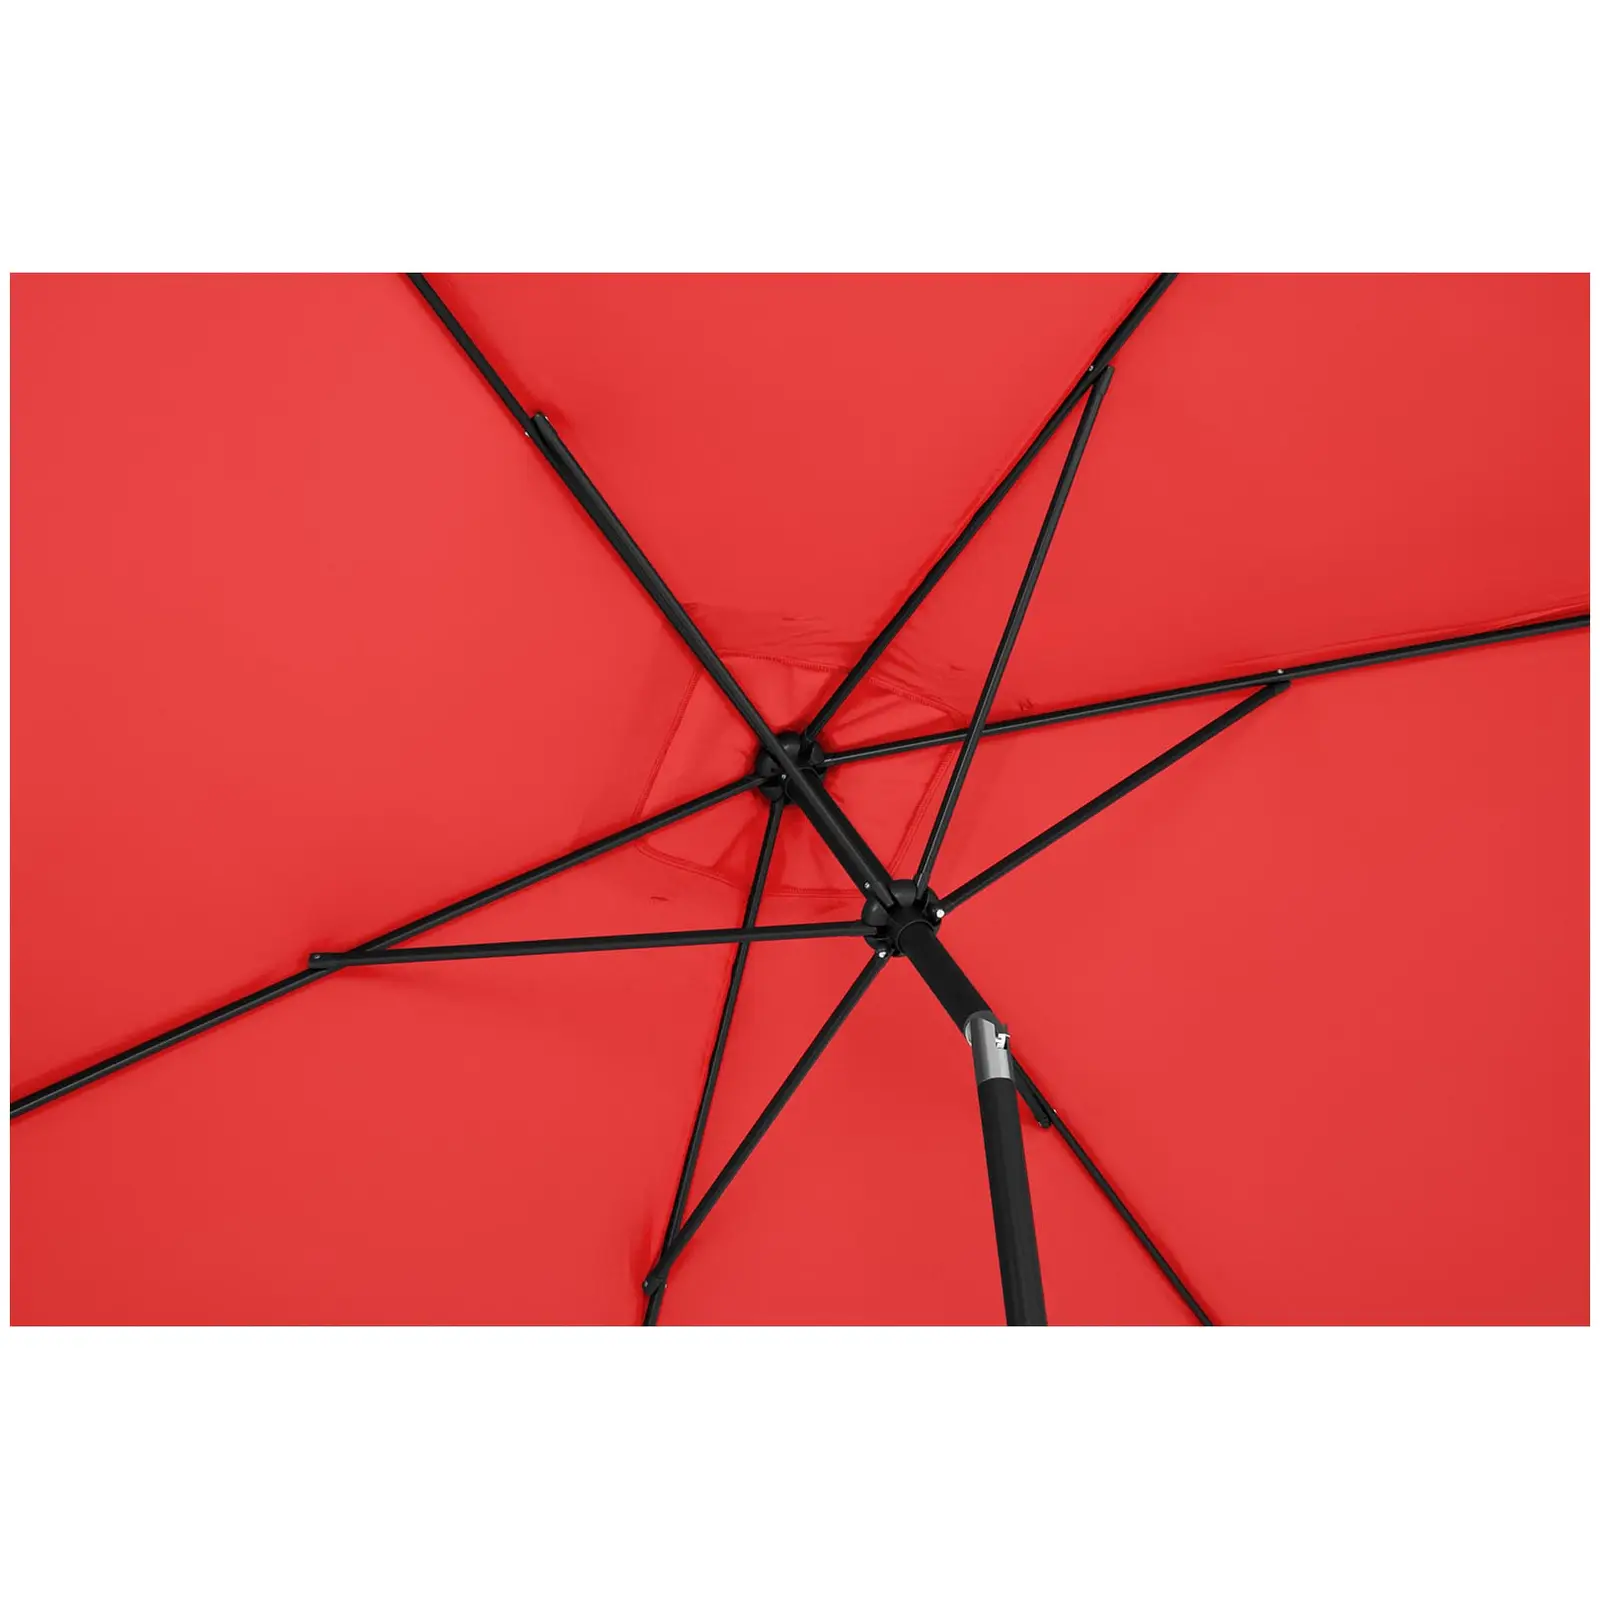 Andrahandssortering Parasoll - stort - rött - rektangulärt - 200 x 300 cm - lutningsbart